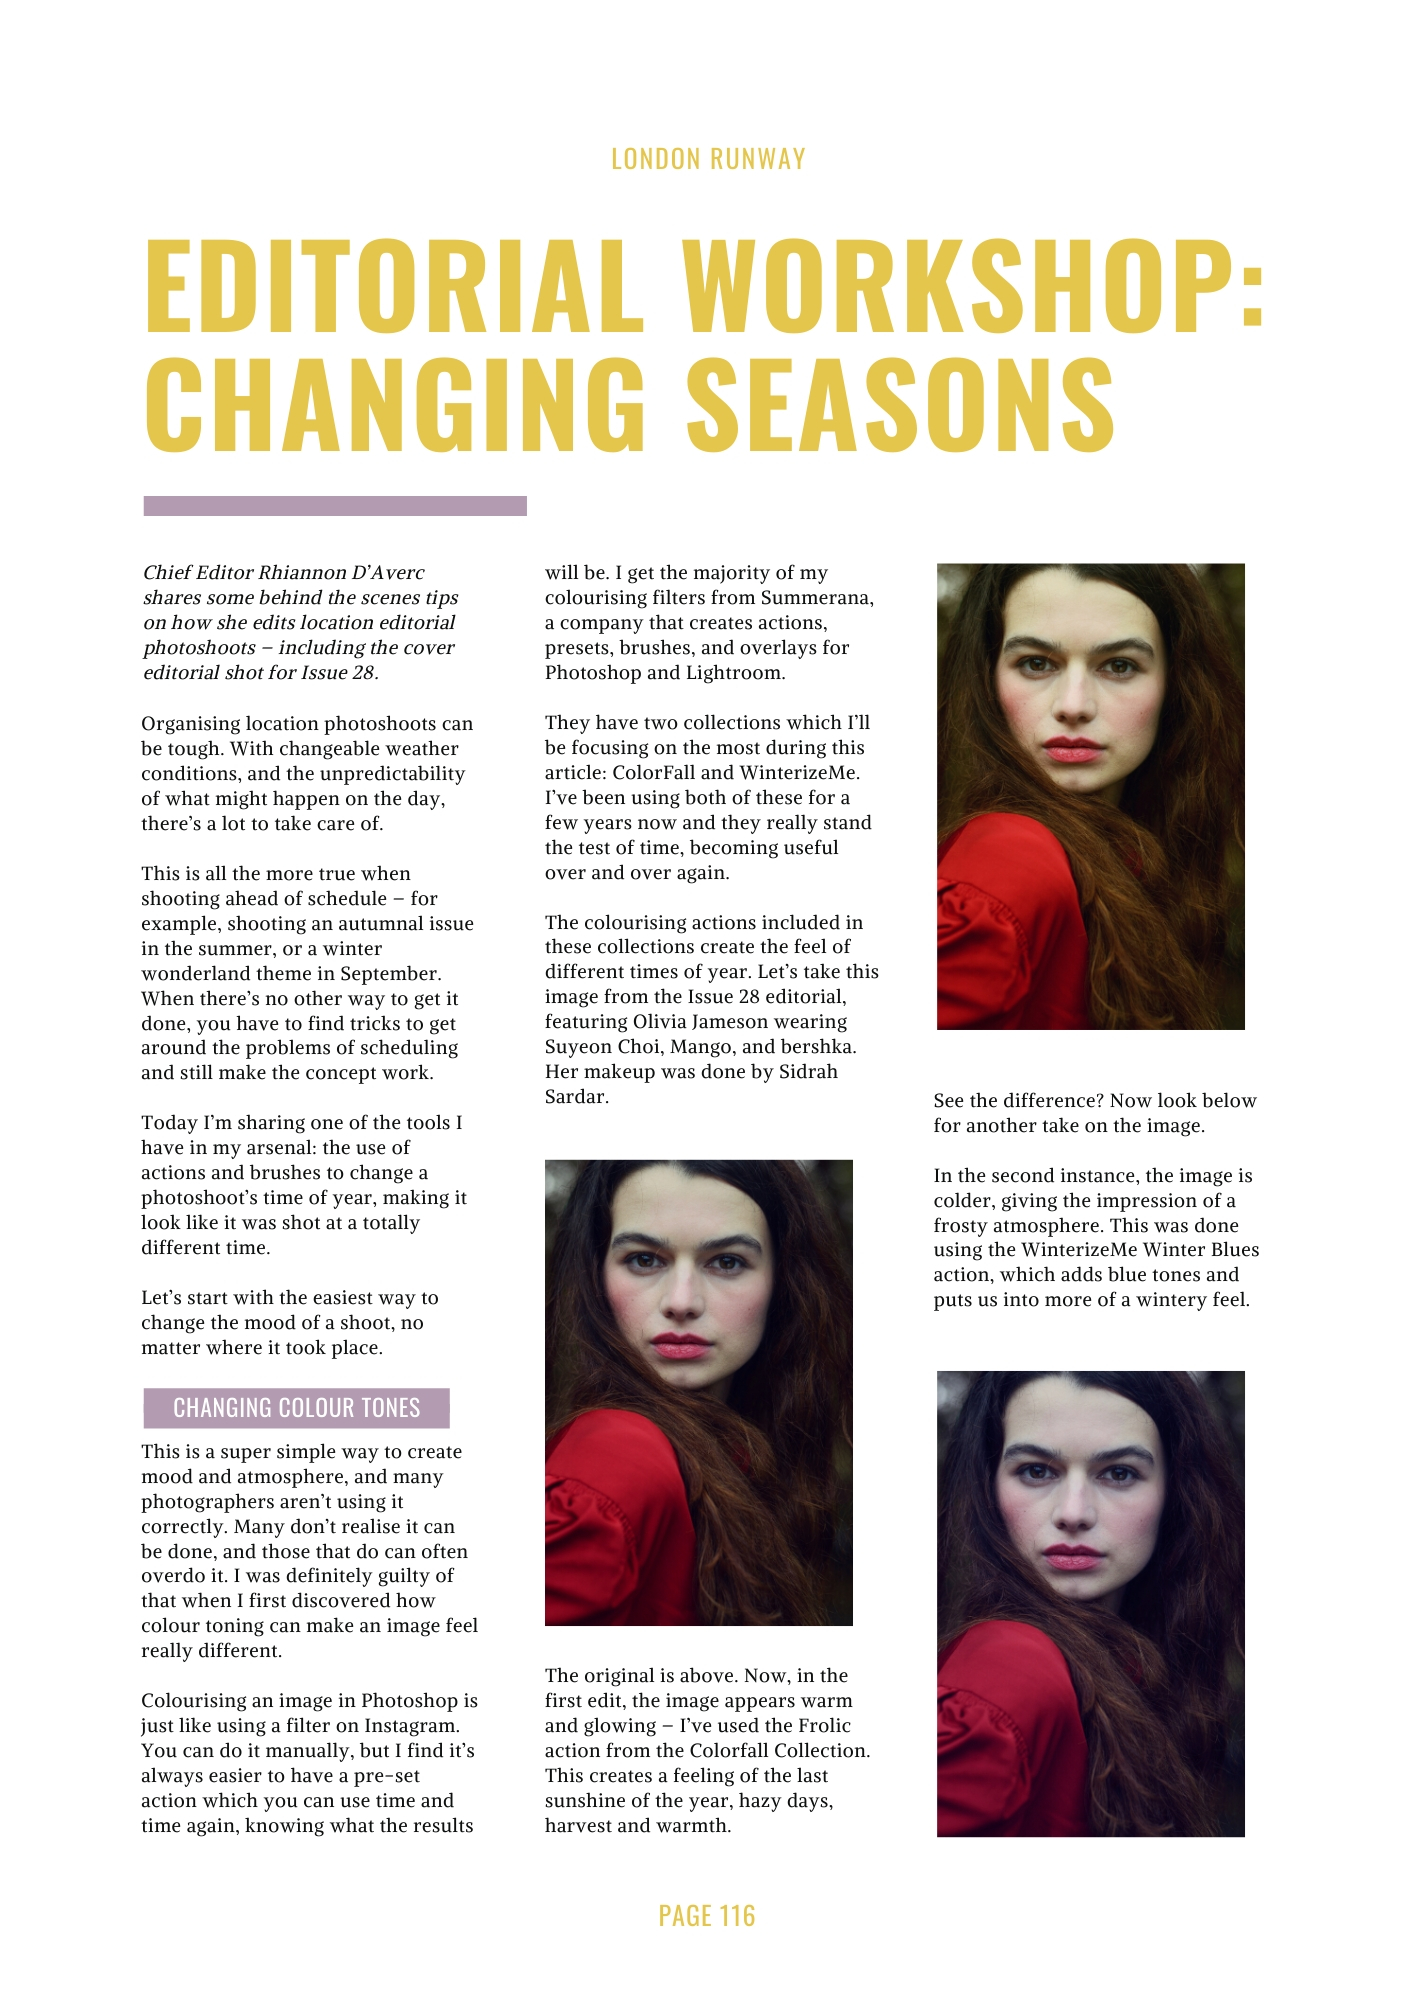 Editorial Worshop: Changing Seasons